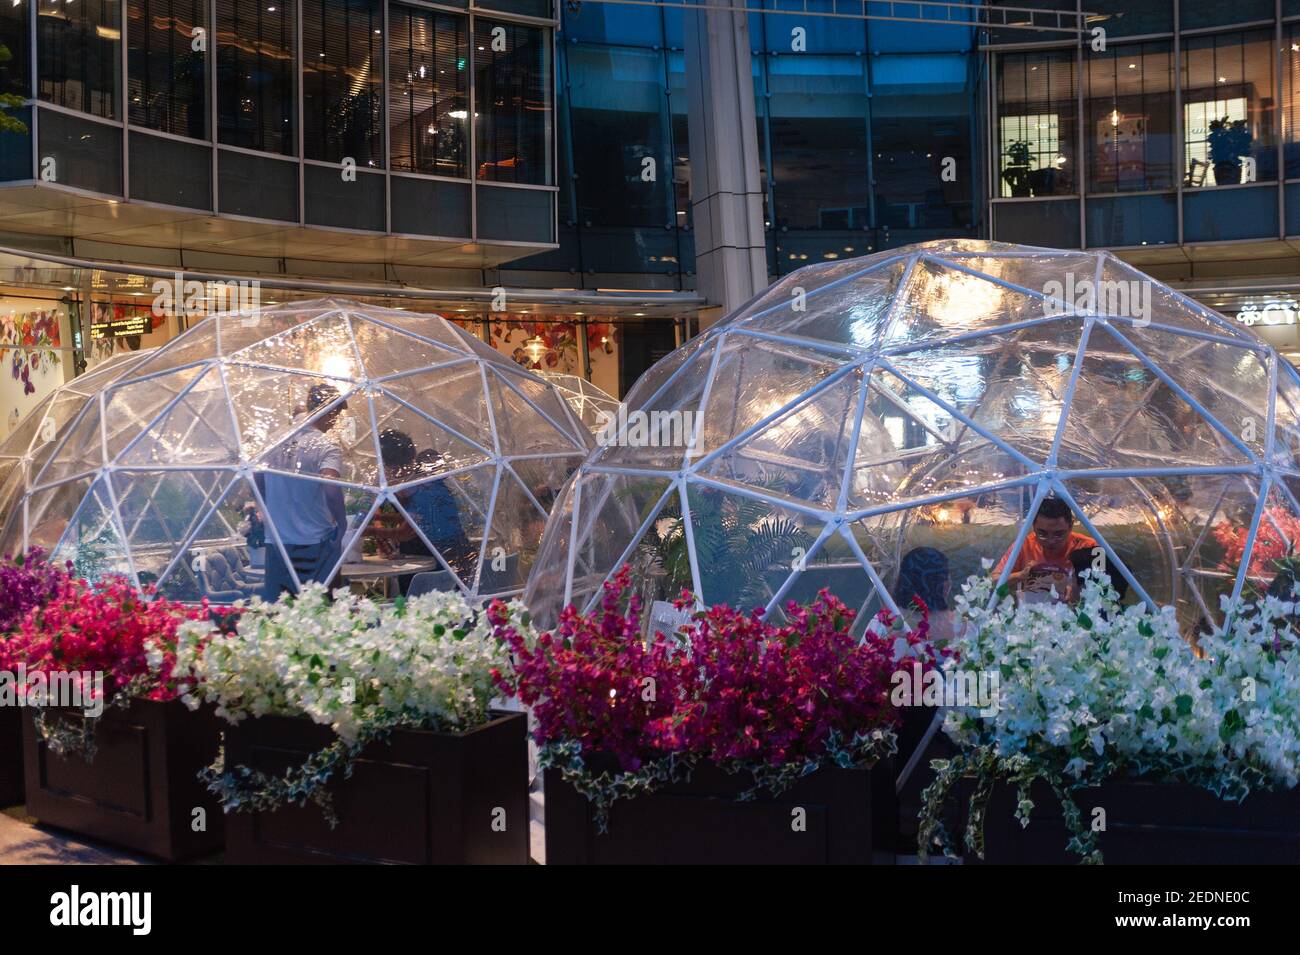 06,11.2020, Singapore, , Singapore - Erleben Sie Abendessen in Kuppelzelten im Outdoor Plaza Capitol Singapore Mall, wo sich die Menschen zum Essen versammeln können Stockfoto